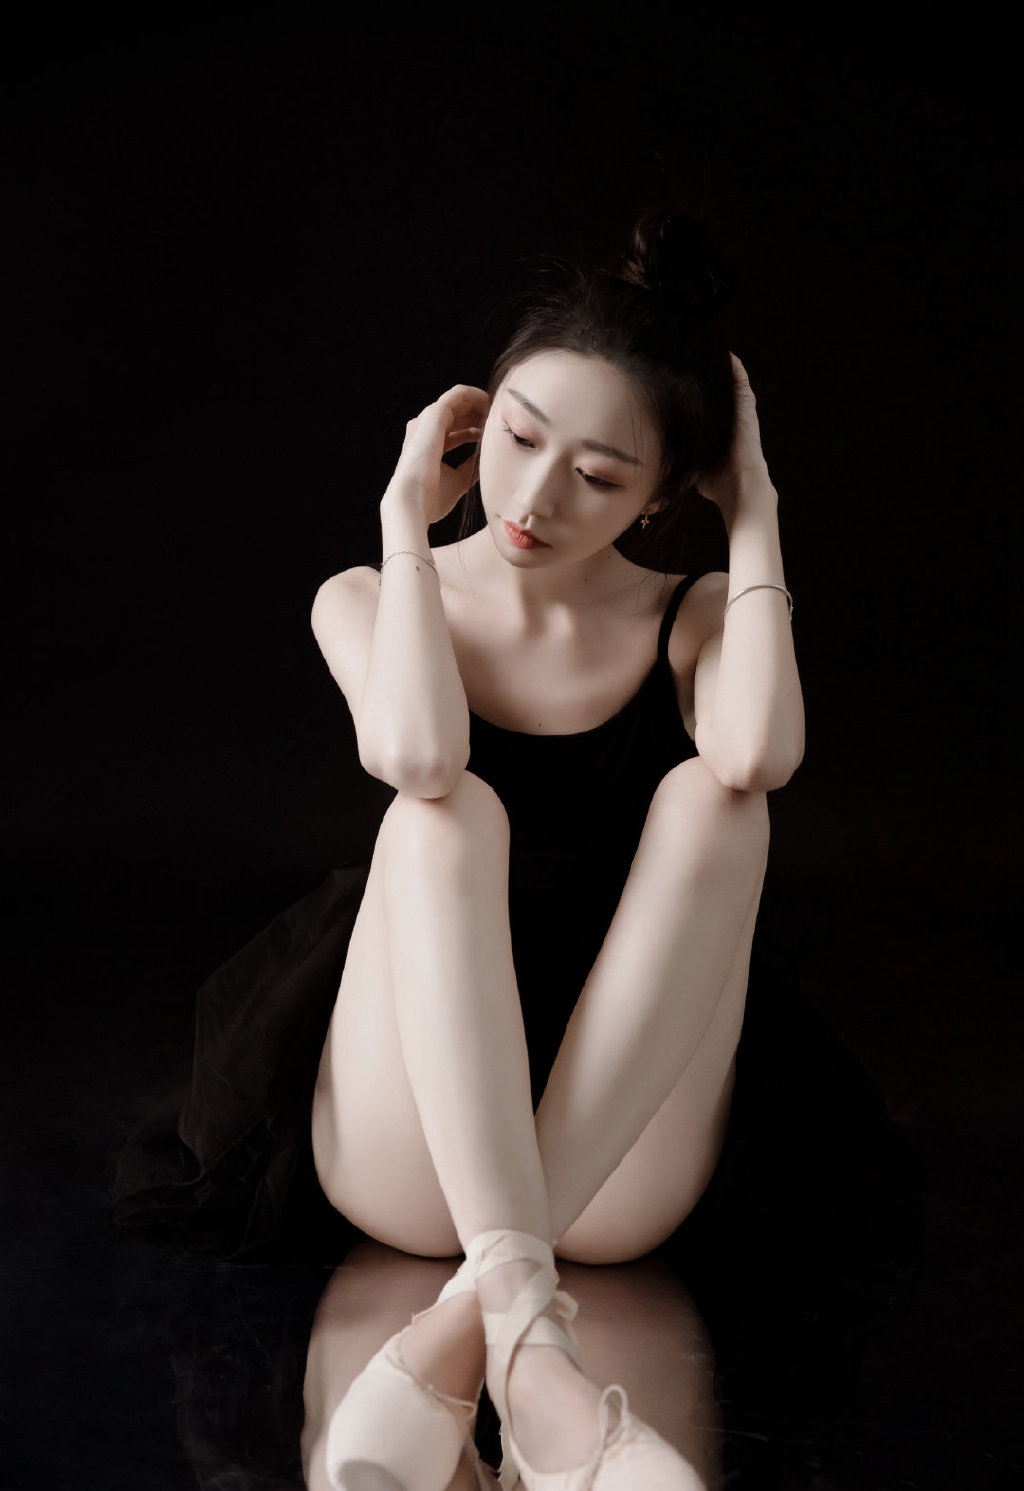 芭蕾舞性感长腿美女黑天鹅私人艺术摄影  第1张